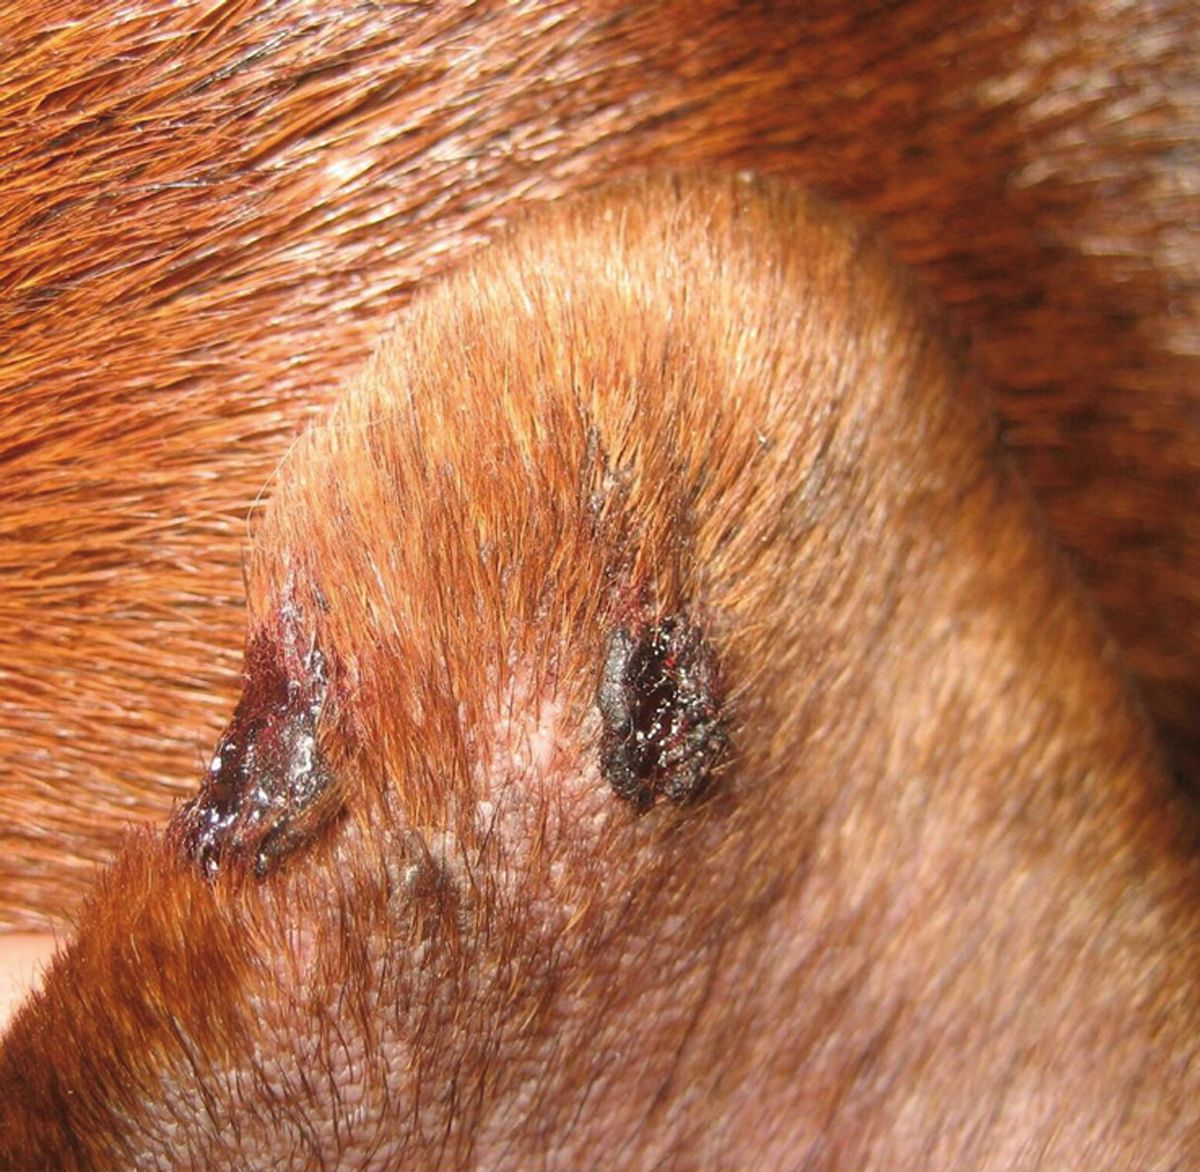 Vasculopatia del margine della pinna auricolare che causa ulcerazioni e un difetto nel margine della pinna stessa.